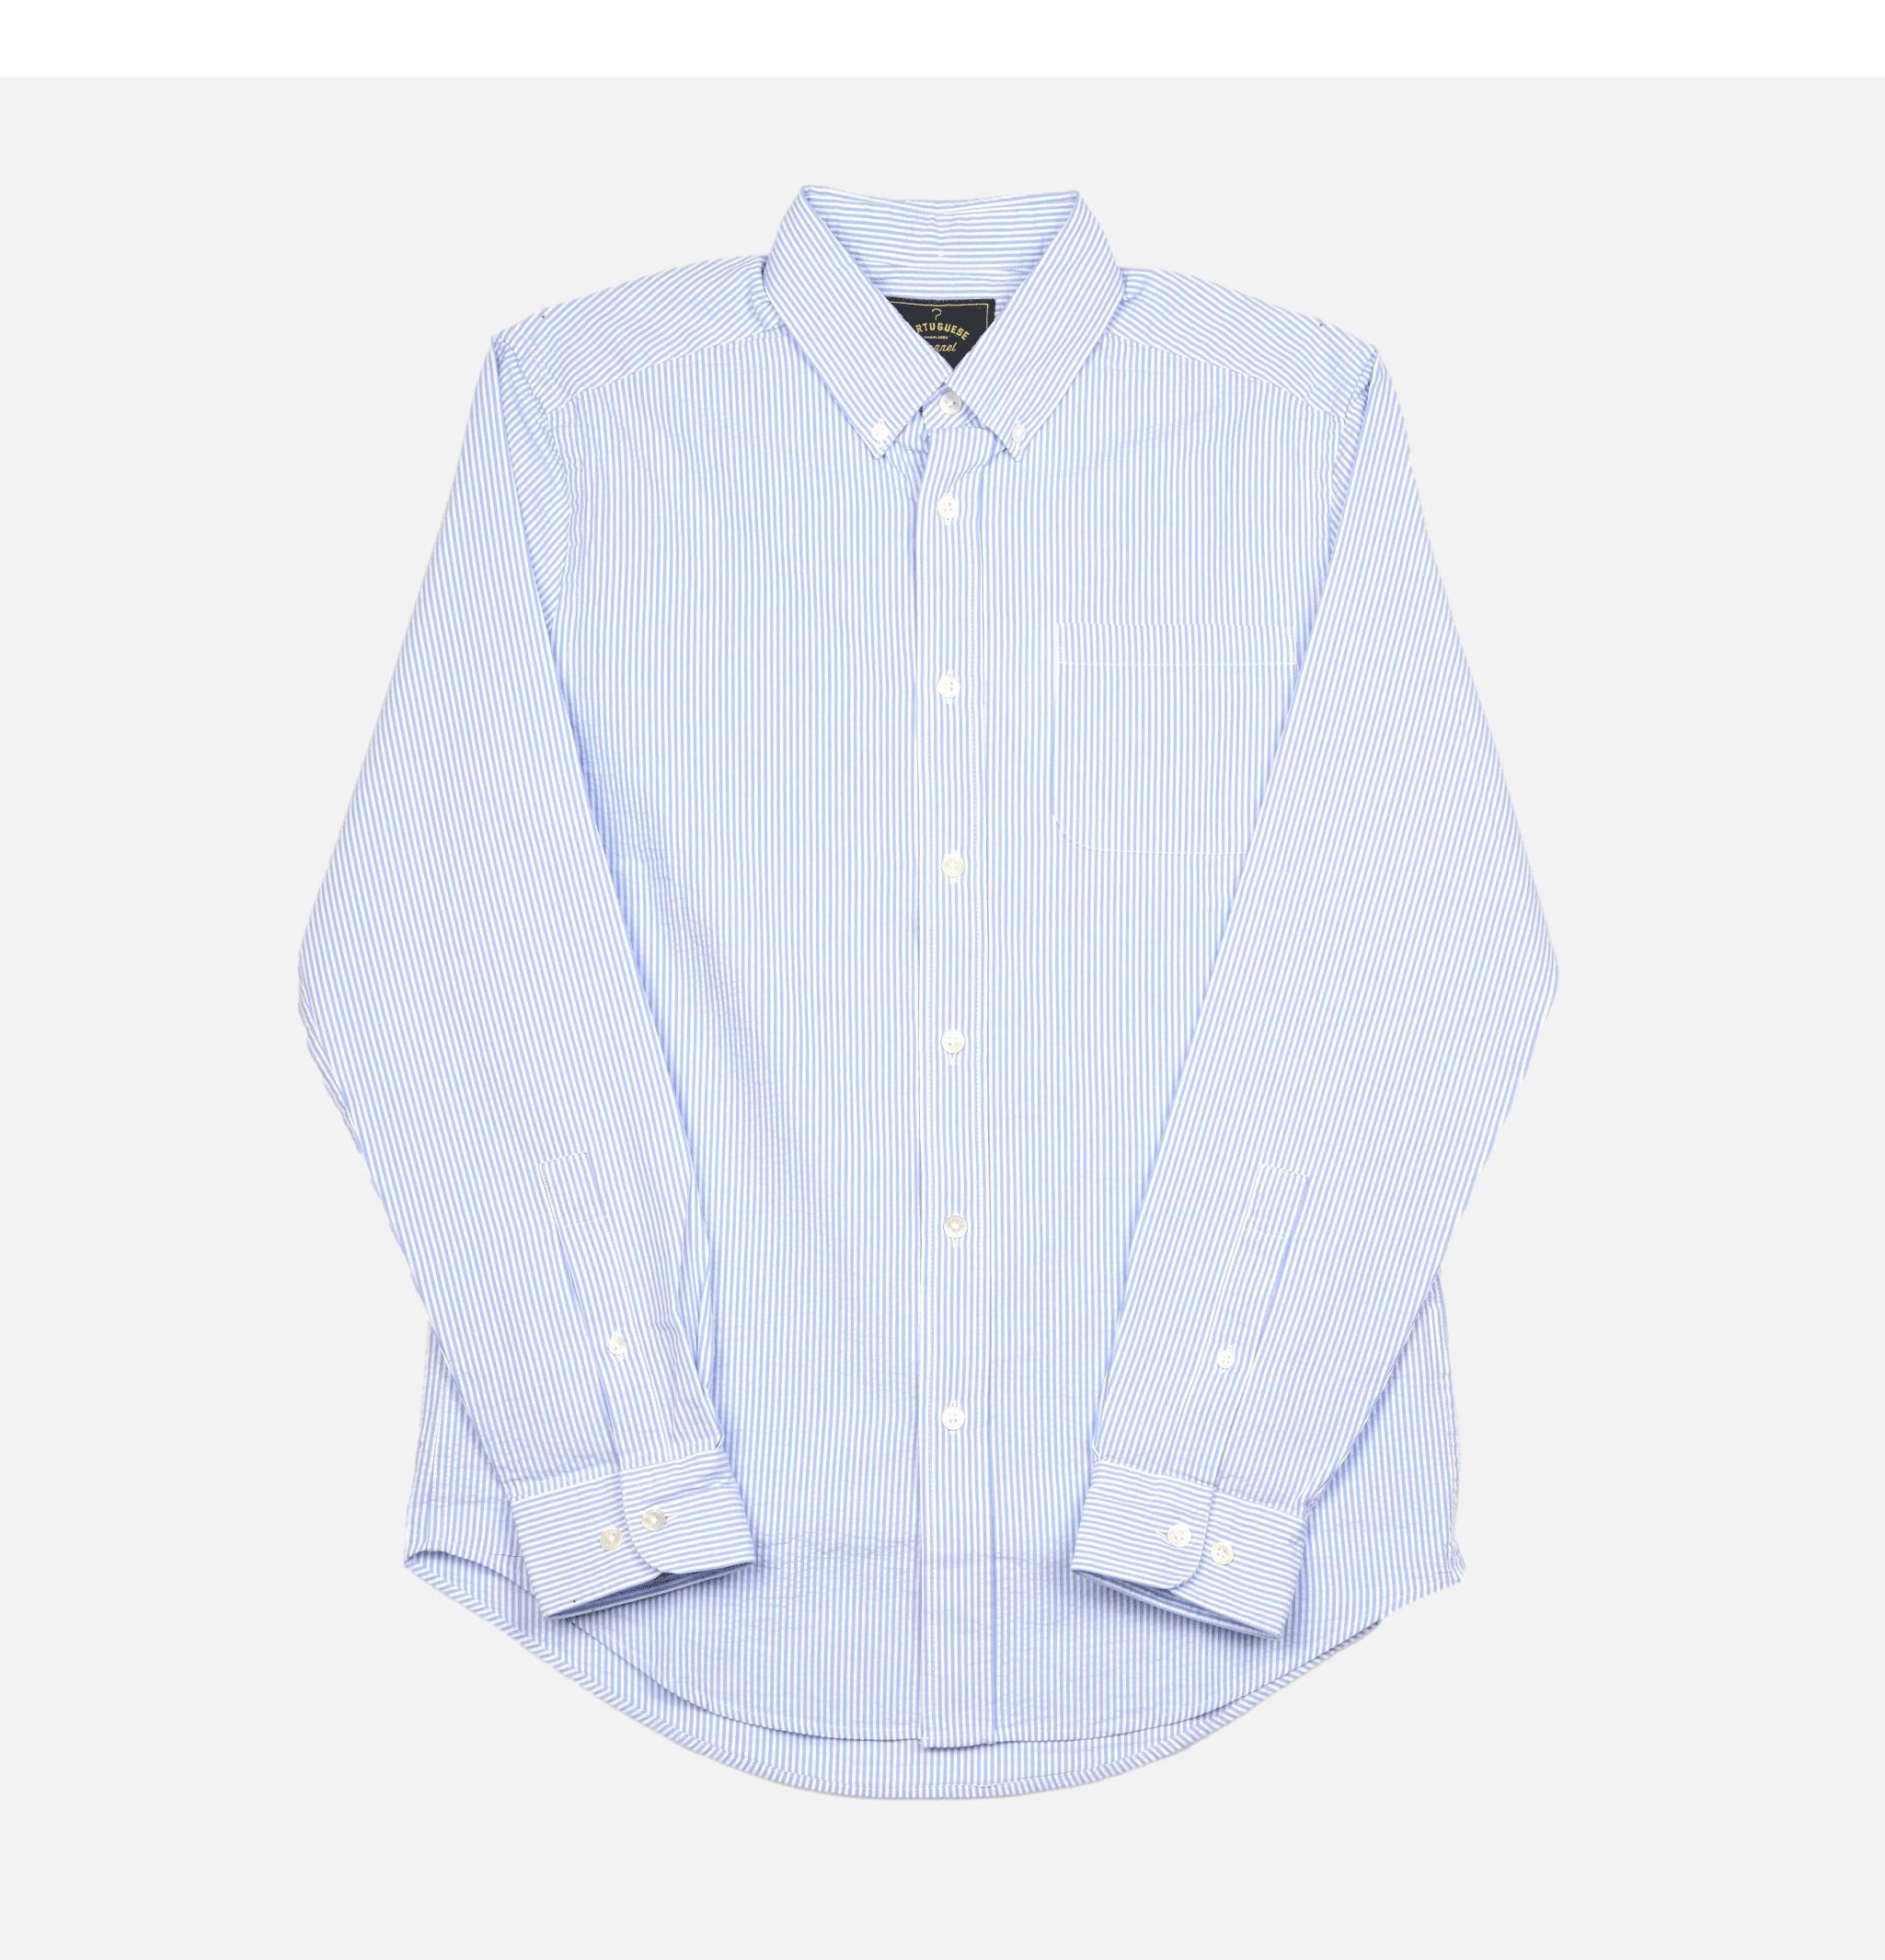 Atlantico Stripe Blue Portuguese Flannel shirt